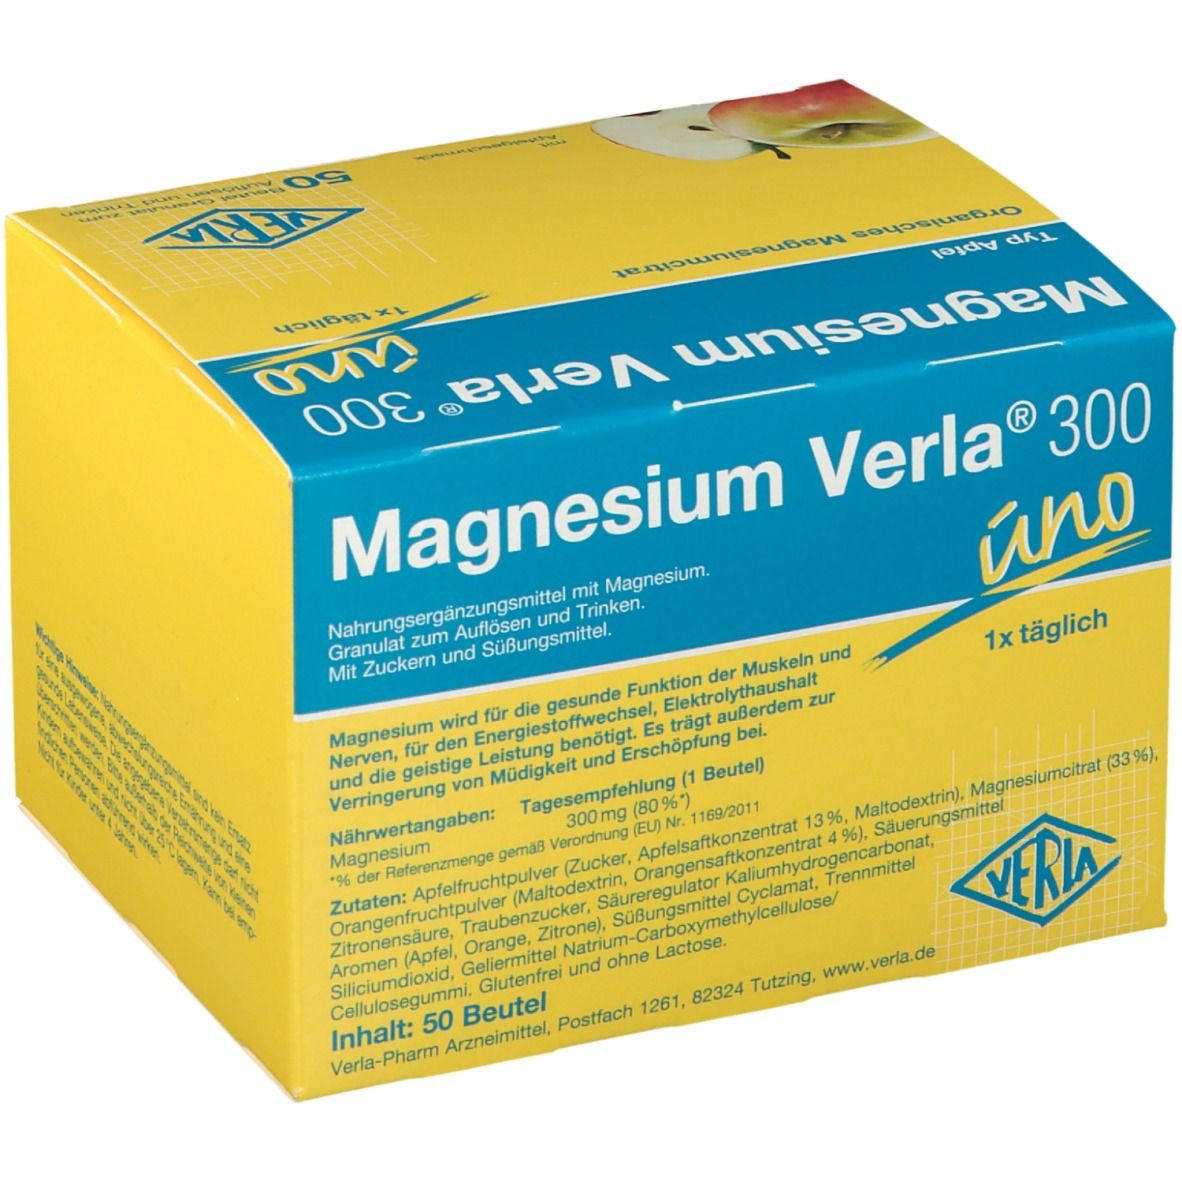 Magnesium Verla® 300 uno Apfel